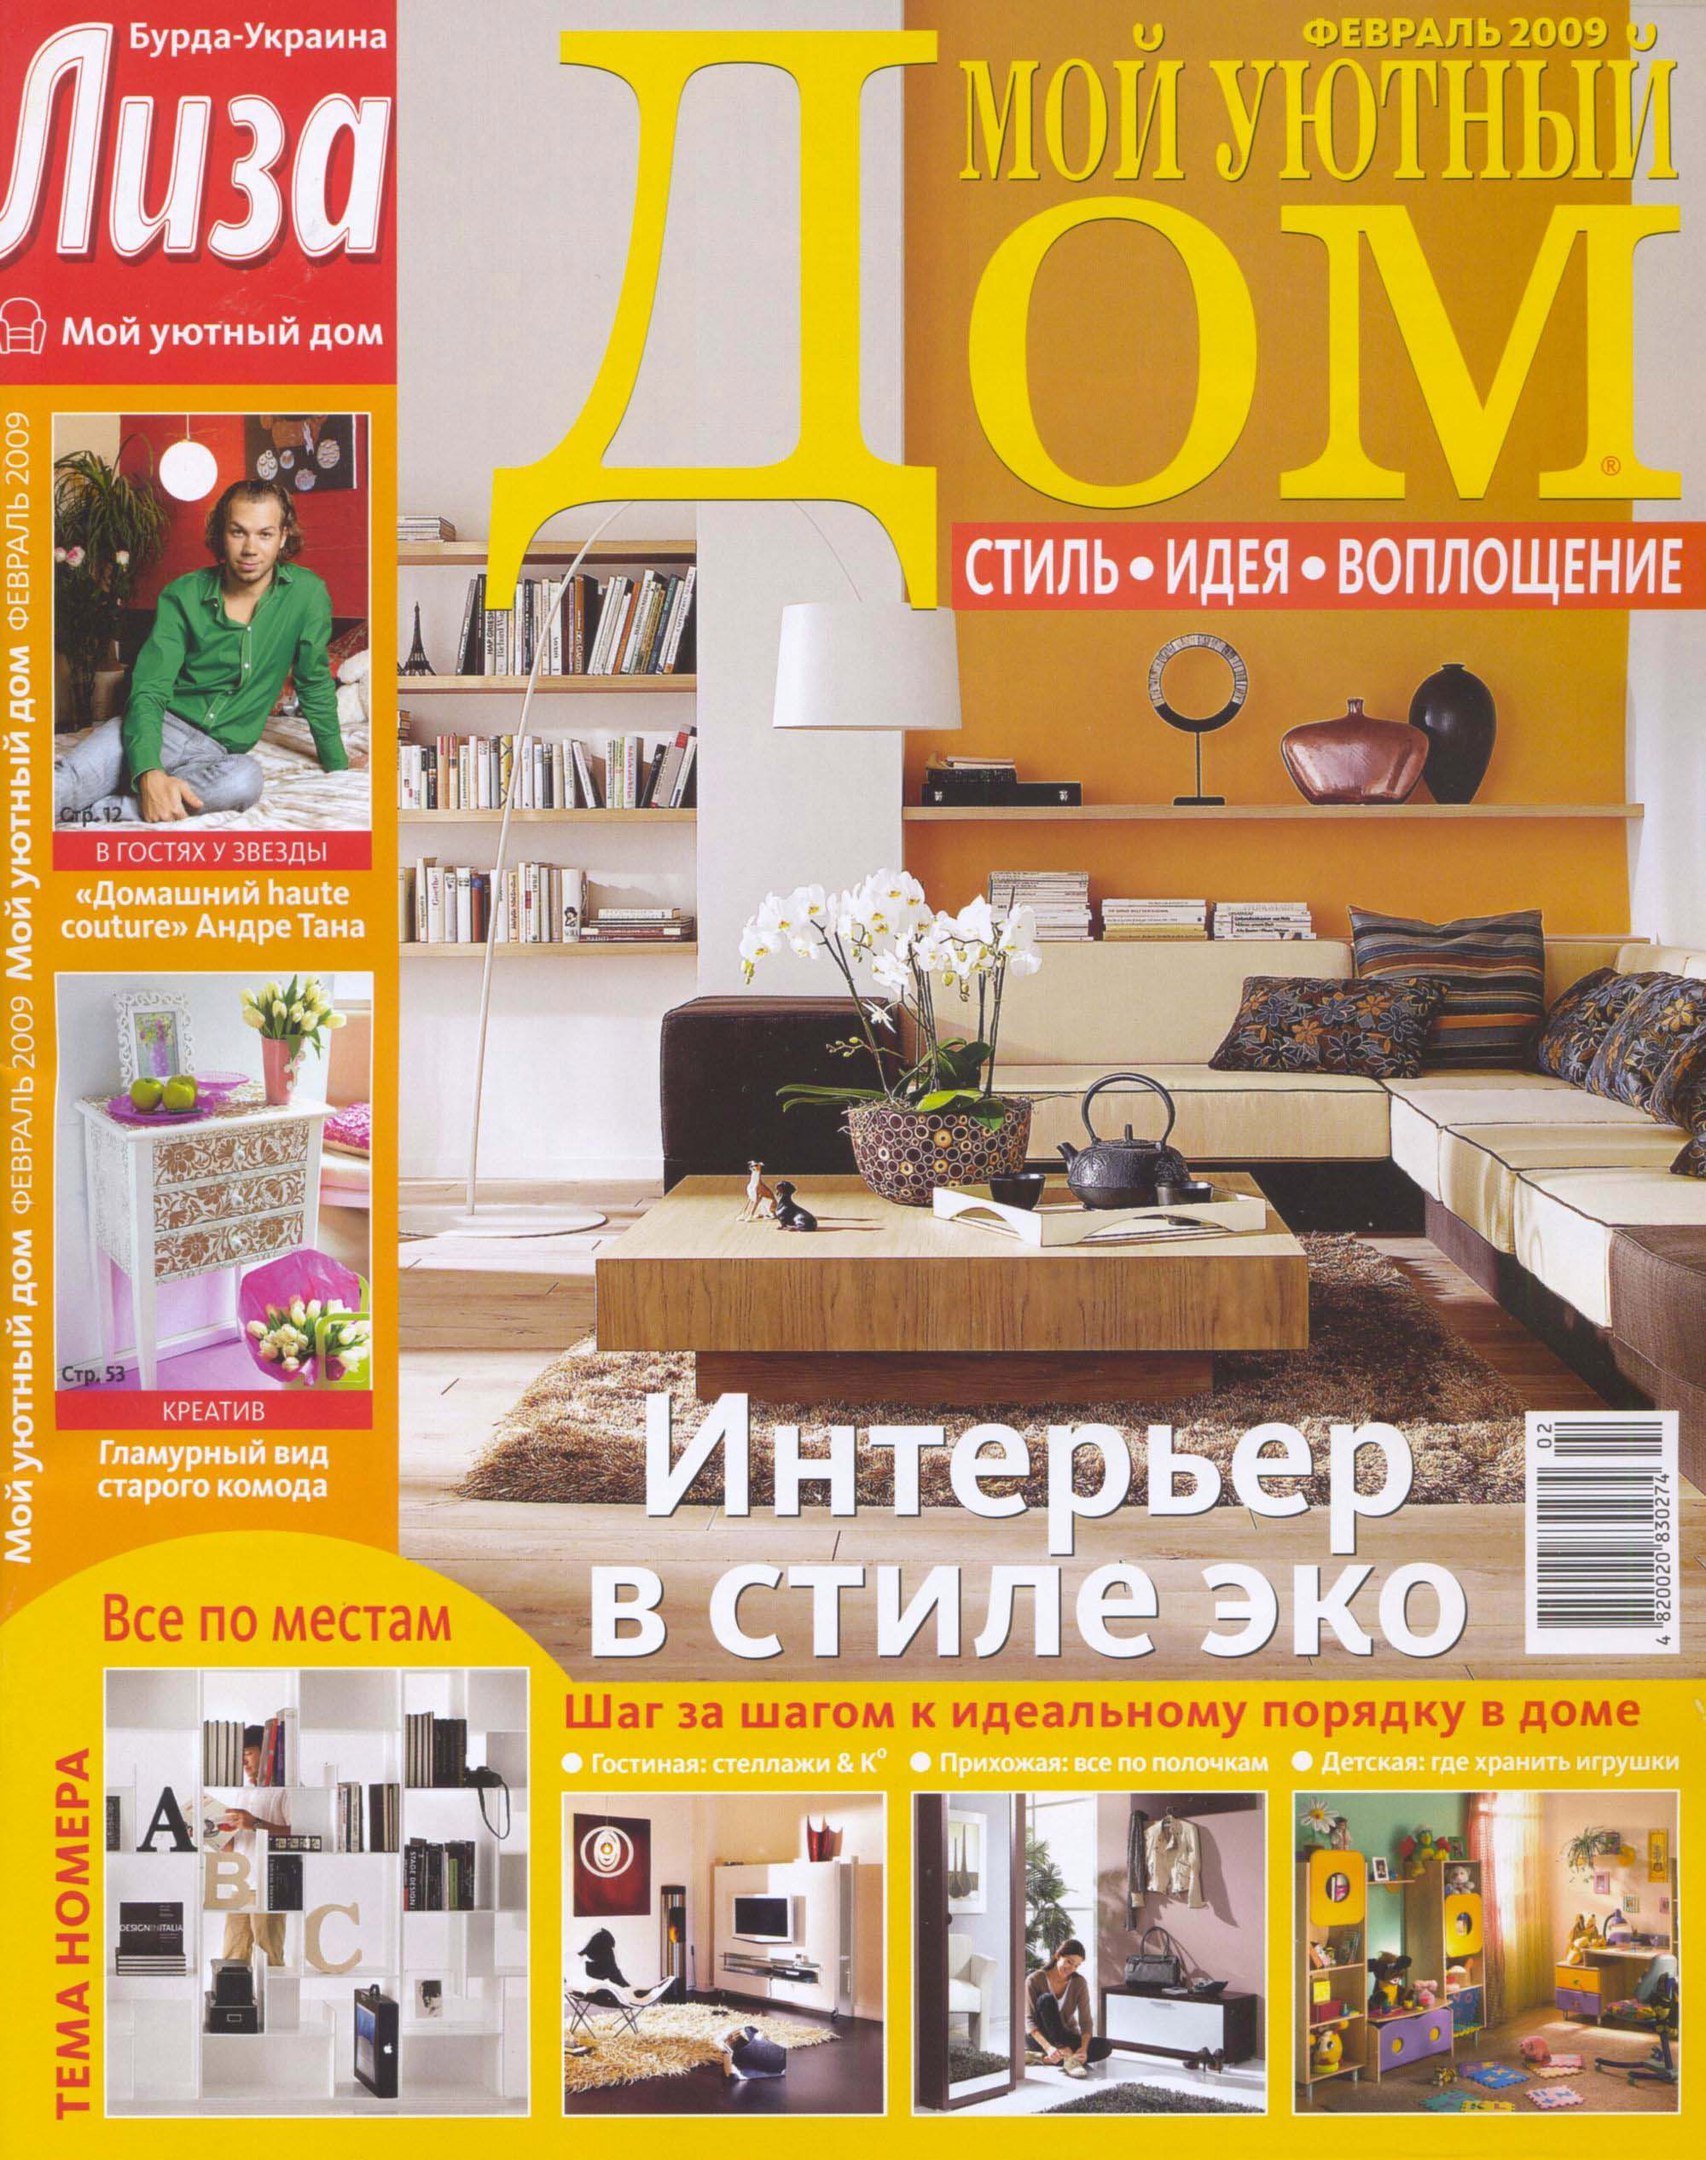 Читать журнал дома. Мой уютный дом журнал. Журналы о доме и уюте. Журнал дом 2009.